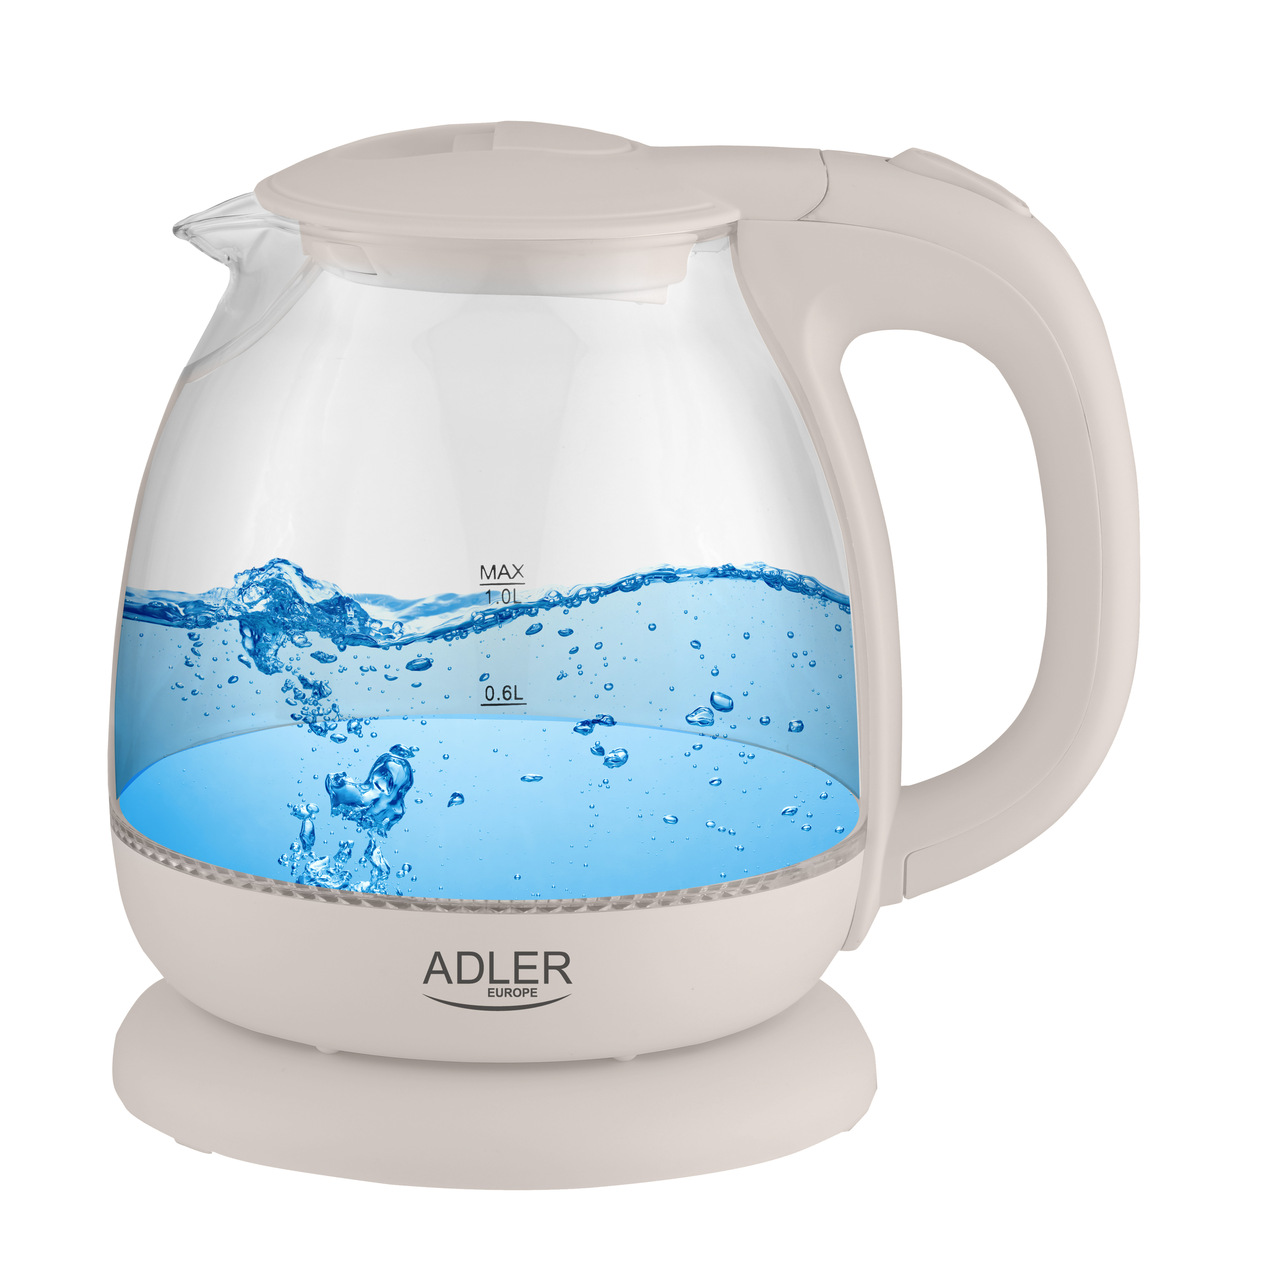 Adler-AD-1283C-Czajnik-elektryczny-szklany-przezroczysty-LED-1-0L-1100-W-140243.jpg